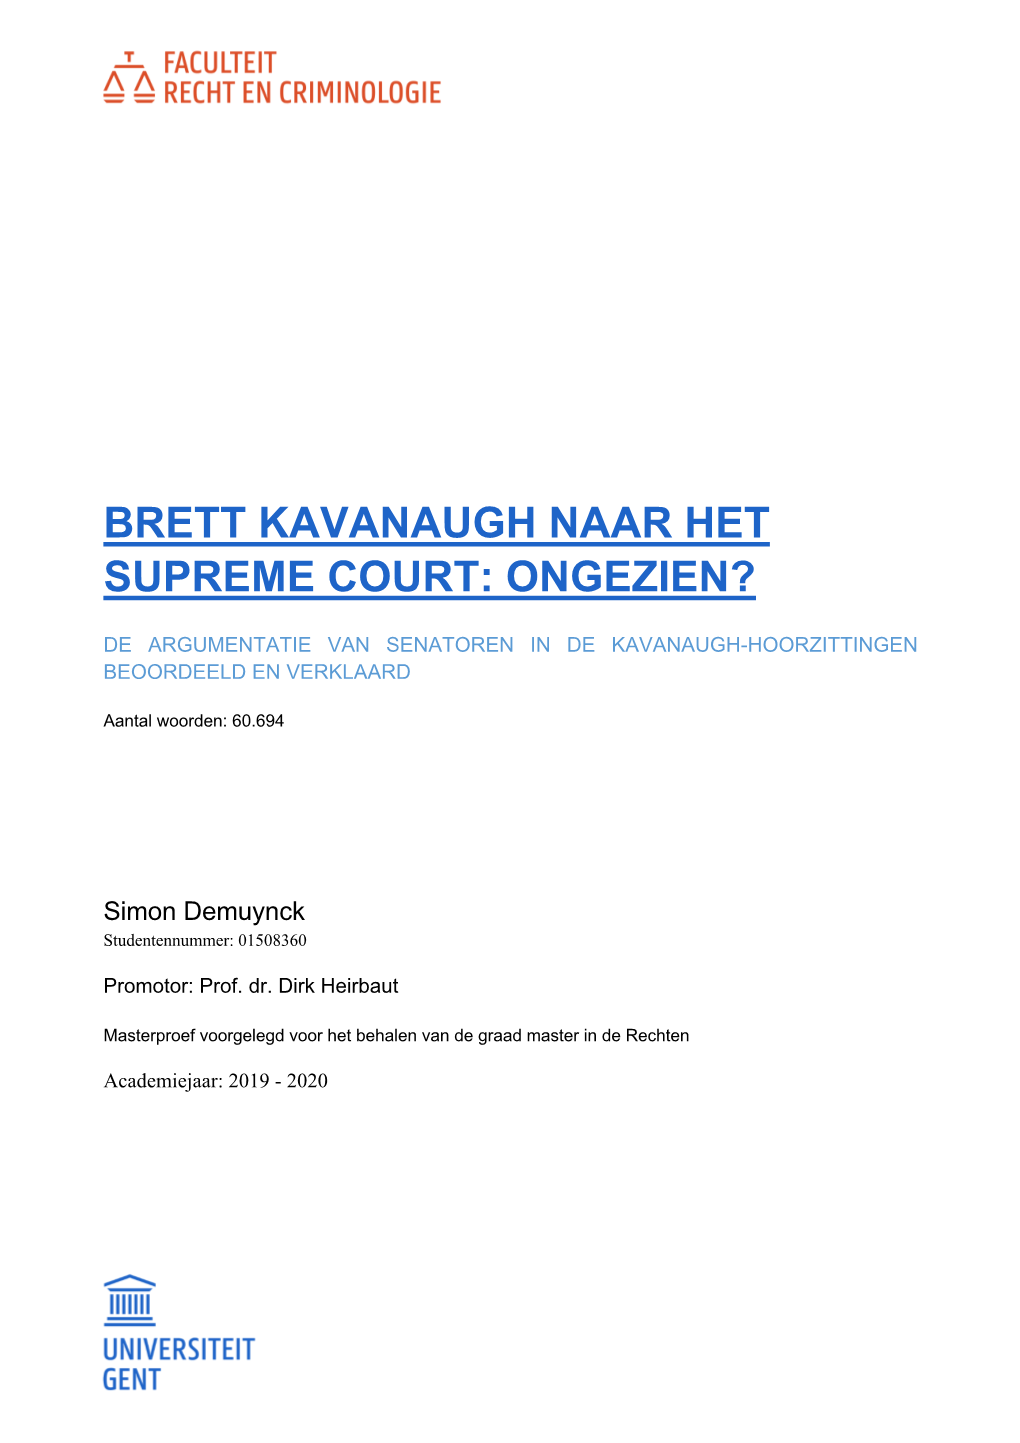 Brett Kavanaugh Naar Het Supreme Court: Ongezien?